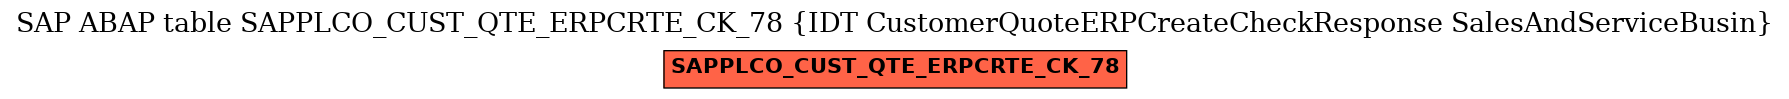 E-R Diagram for table SAPPLCO_CUST_QTE_ERPCRTE_CK_78 (IDT CustomerQuoteERPCreateCheckResponse SalesAndServiceBusin)